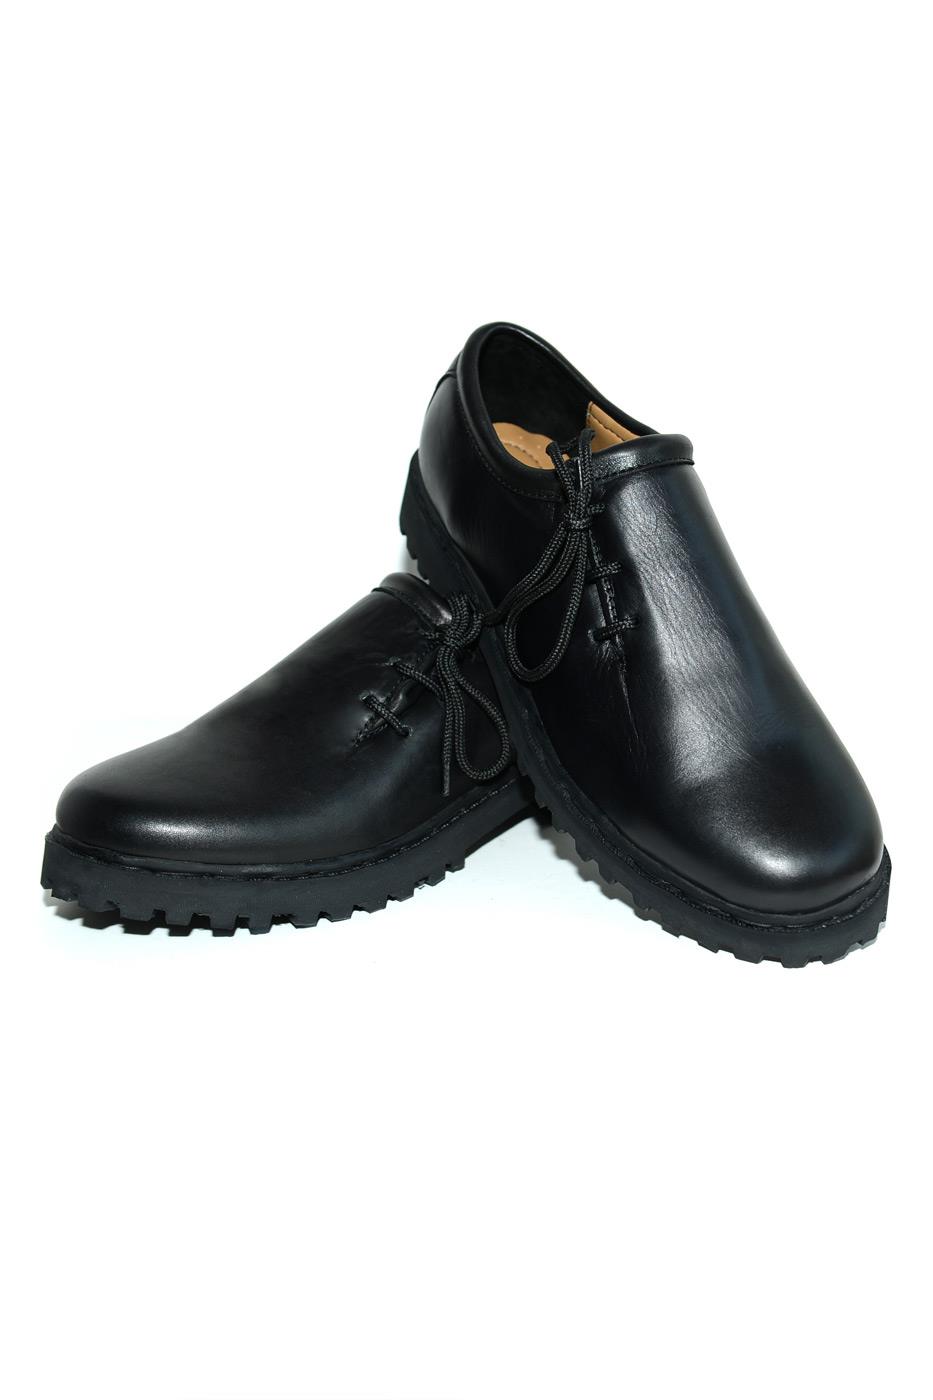 Schuhe schwarz Glattleder